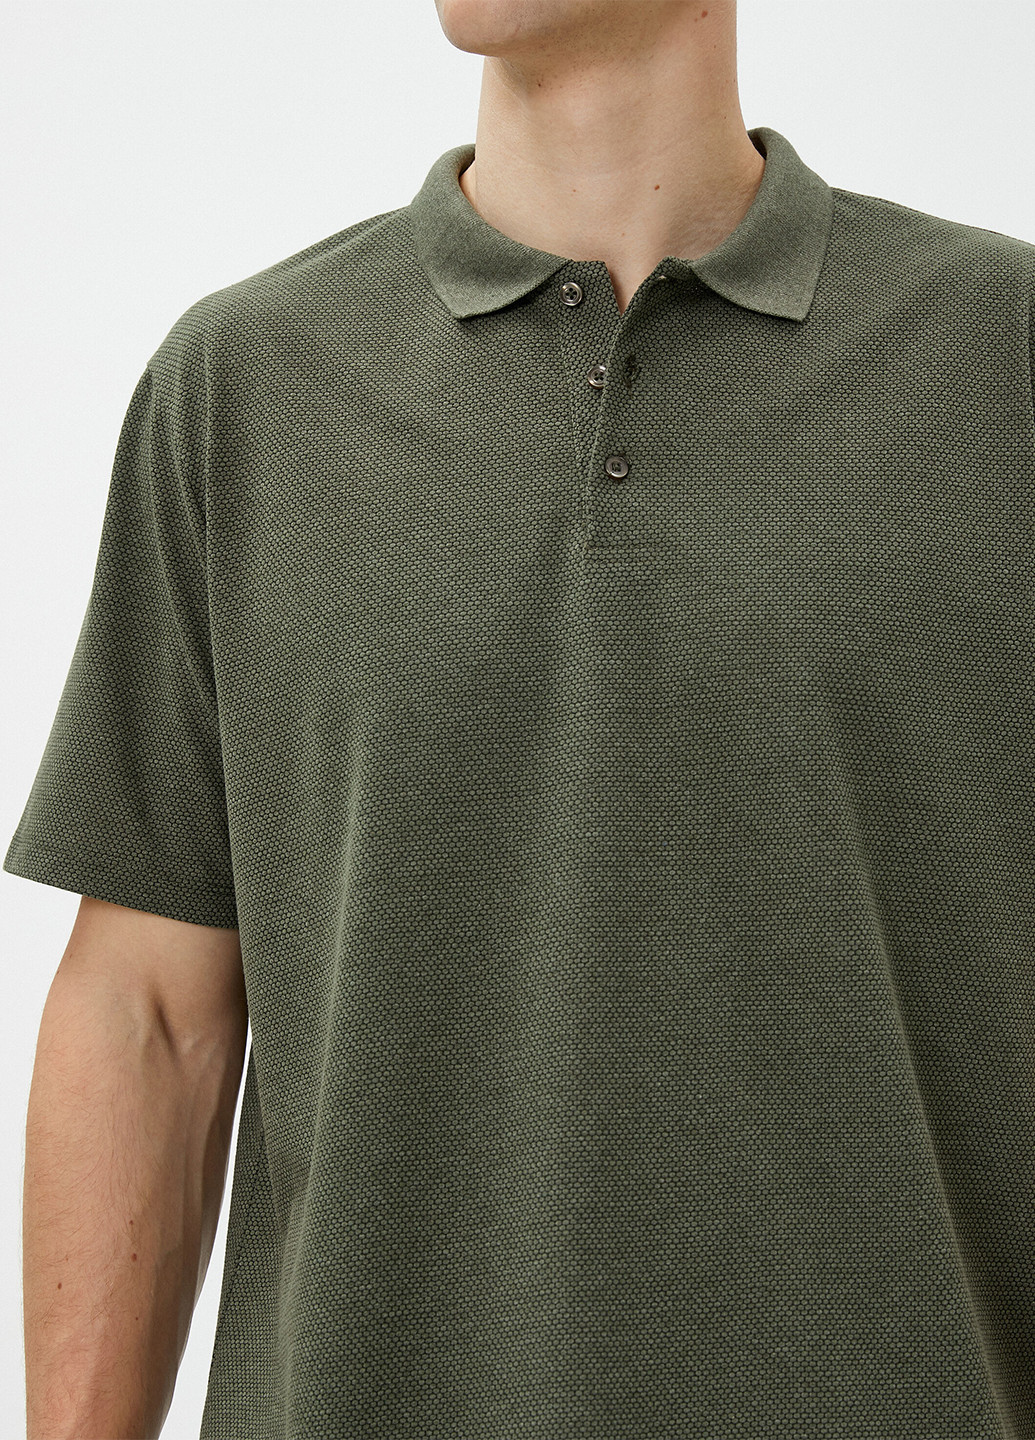 Оливковая (хаки) футболка-поло для мужчин KOTON